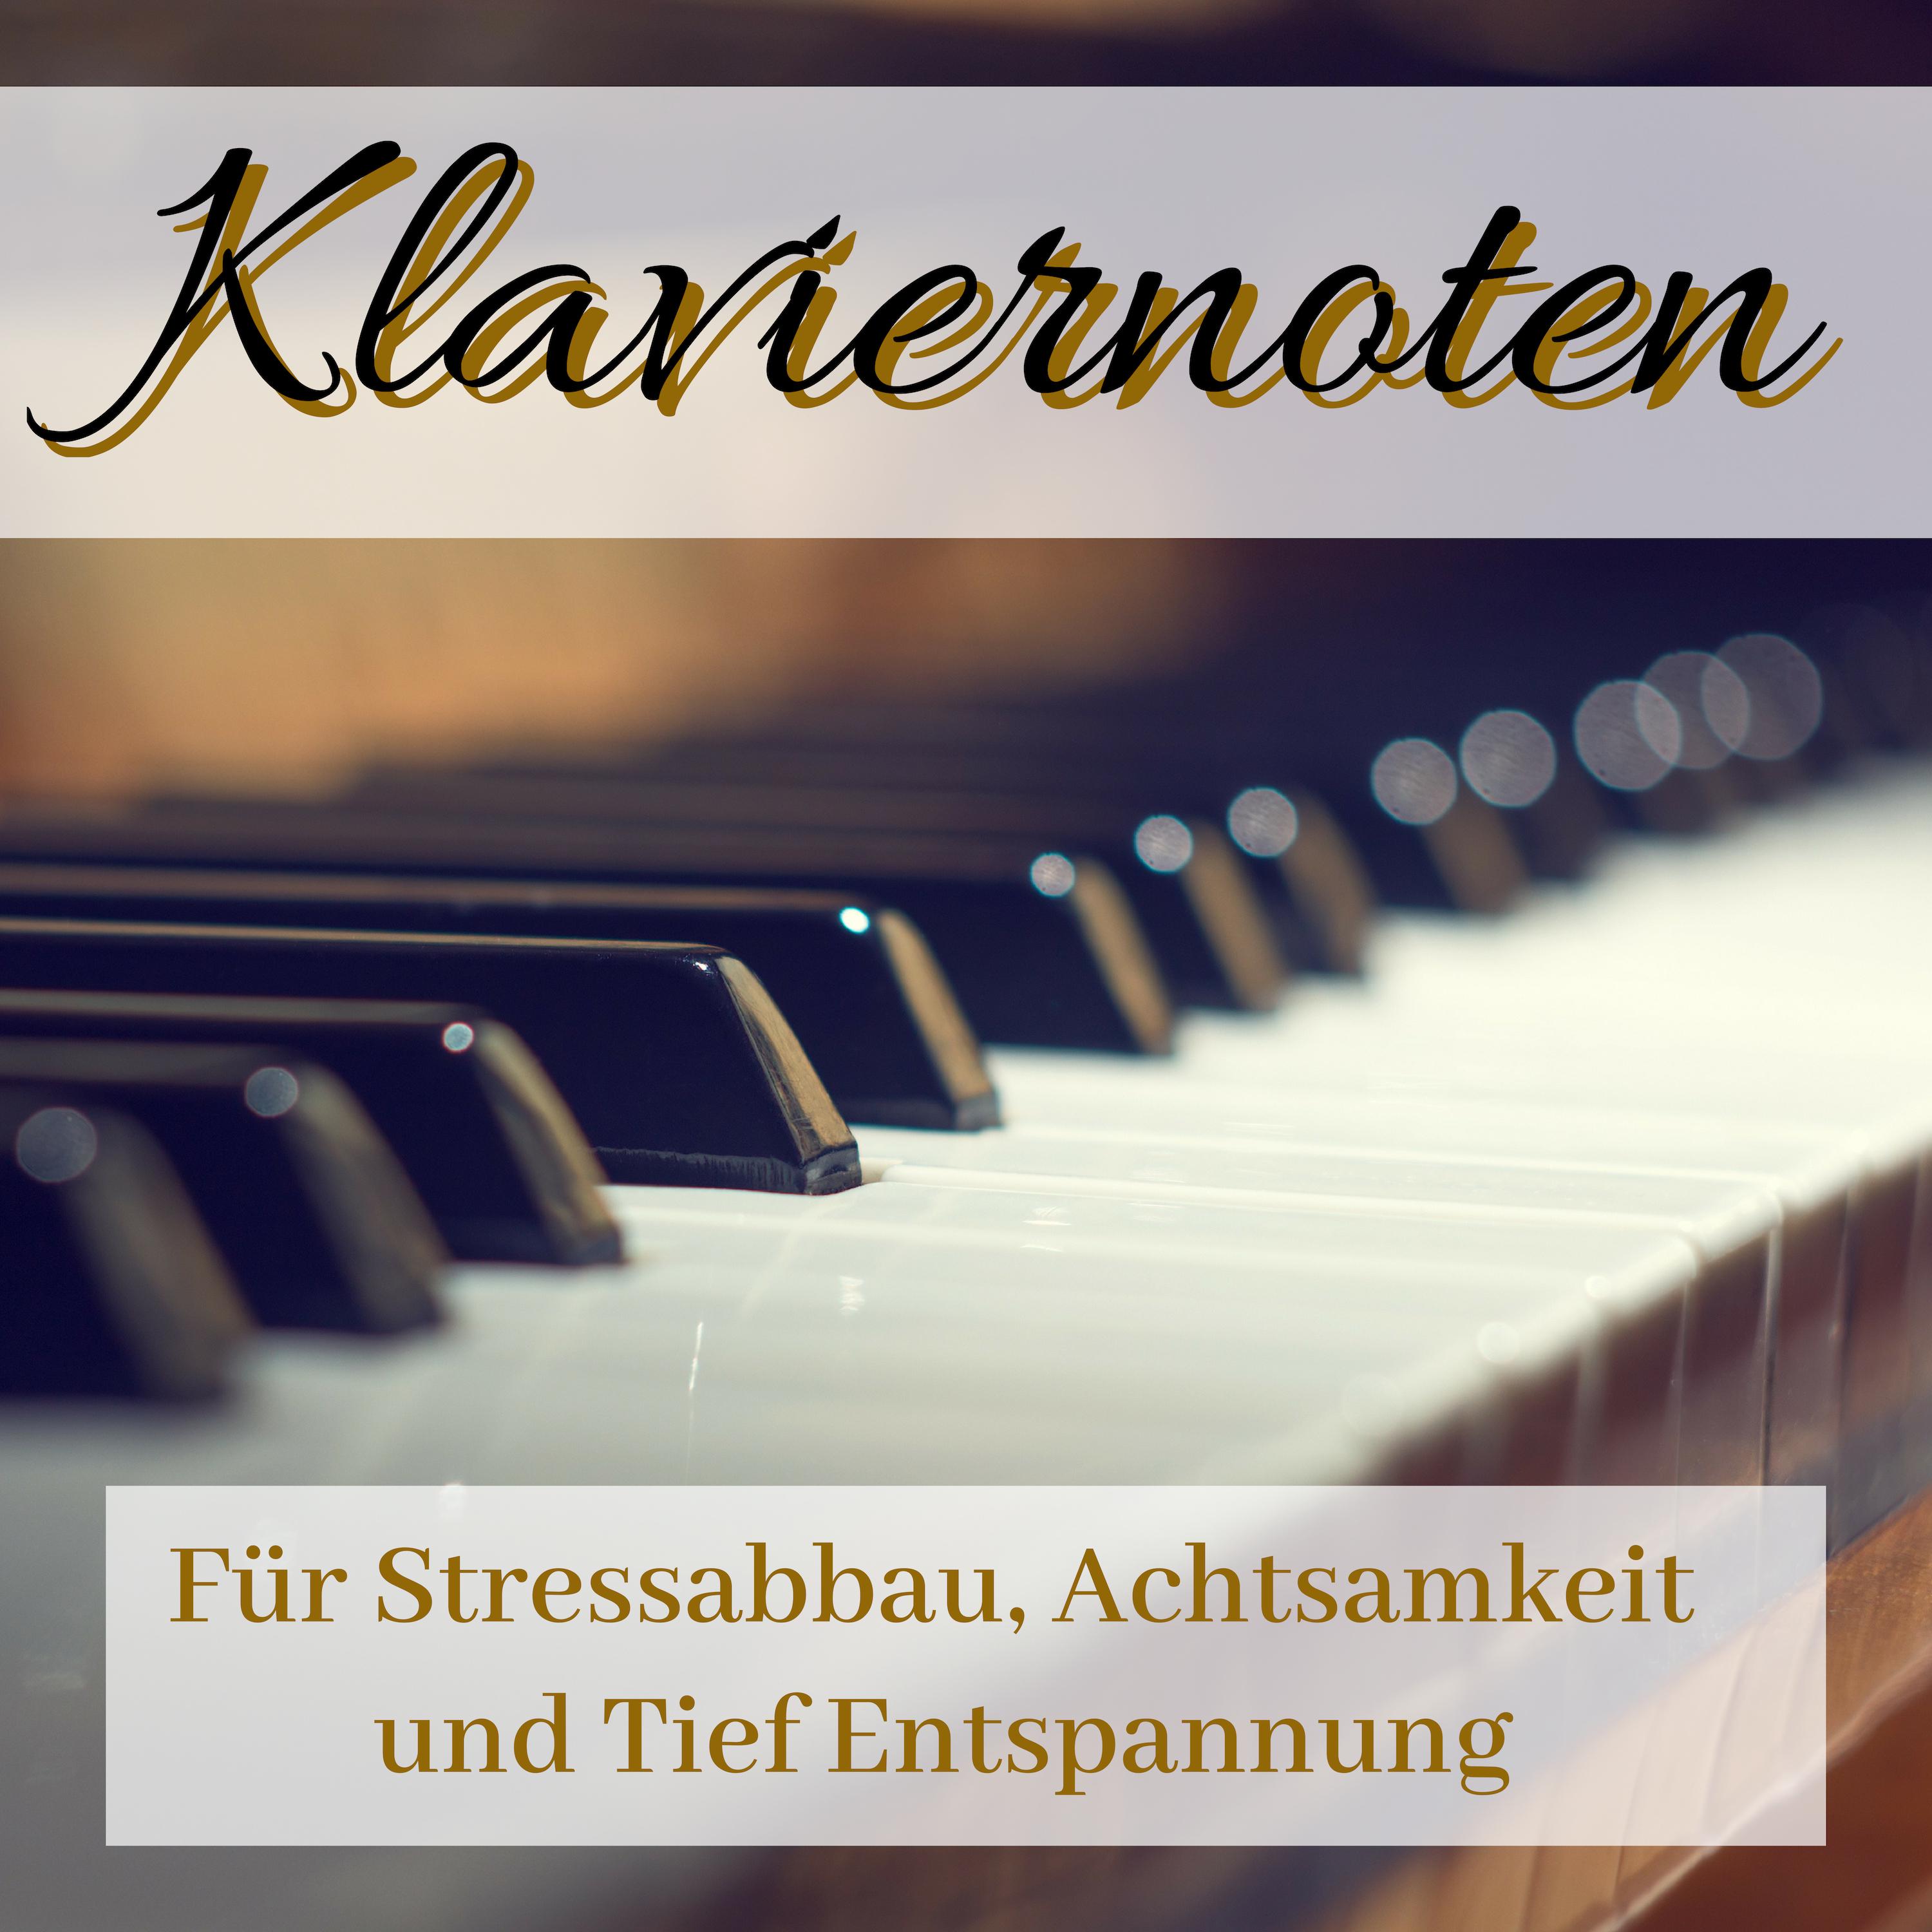 Klaviernoten - Schöne Klaviermusik für Stressabbau, Achtsamkeit und Tief Entspannung